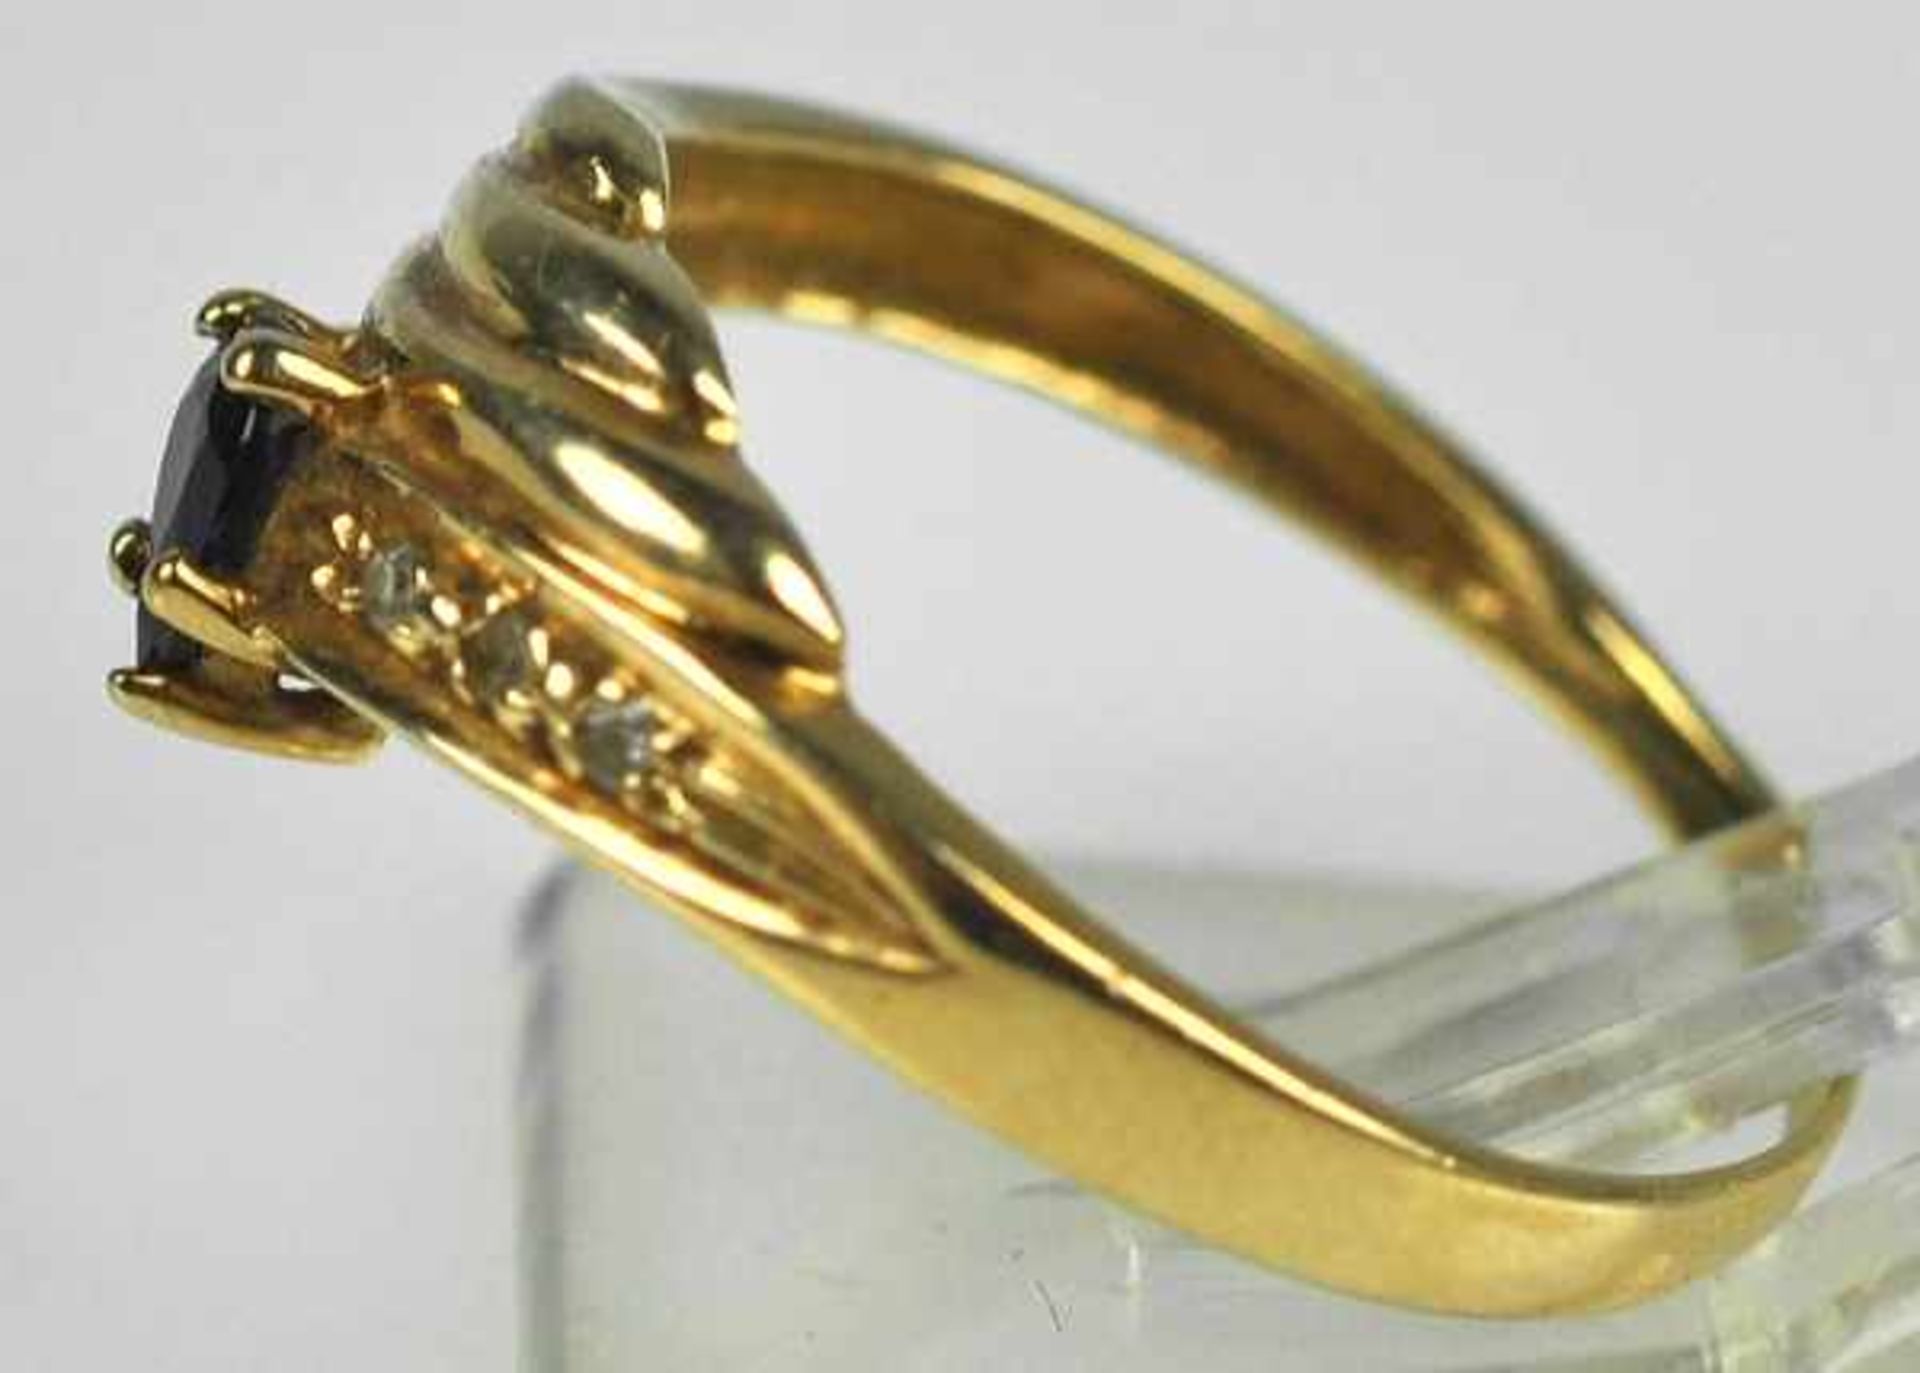 RING gerippter Dekor mit kleinem tropfenförmigem Saphir, 3 kleinen Diamanten als Besatz, Gelbgold - Bild 3 aus 3